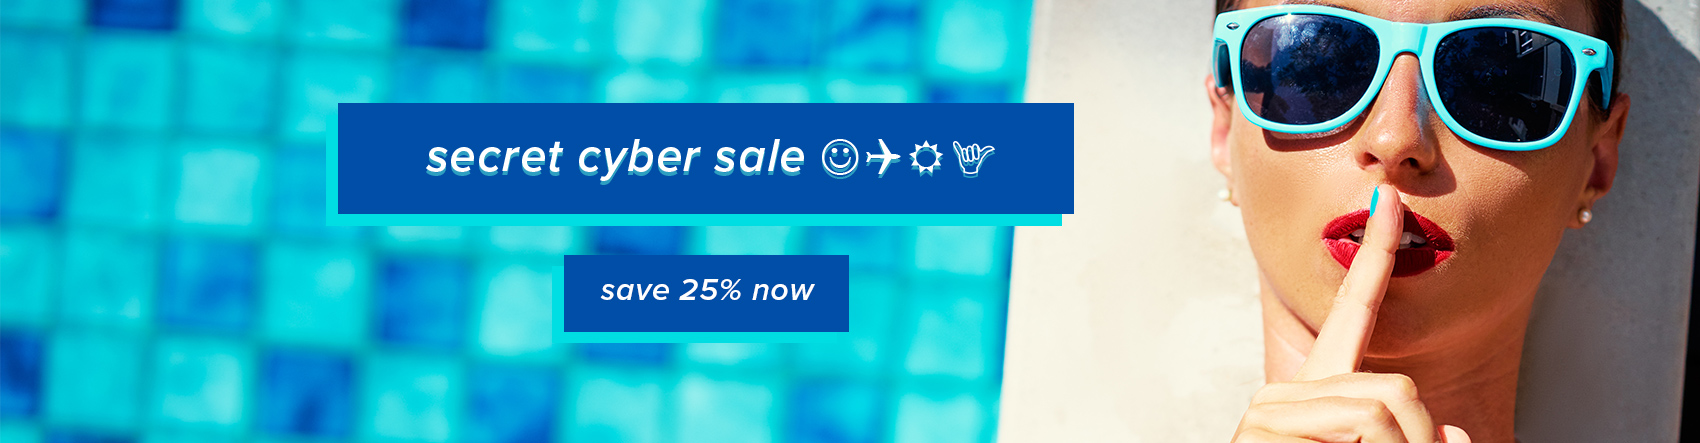 Secret Cyber Sale. Save 25% now.